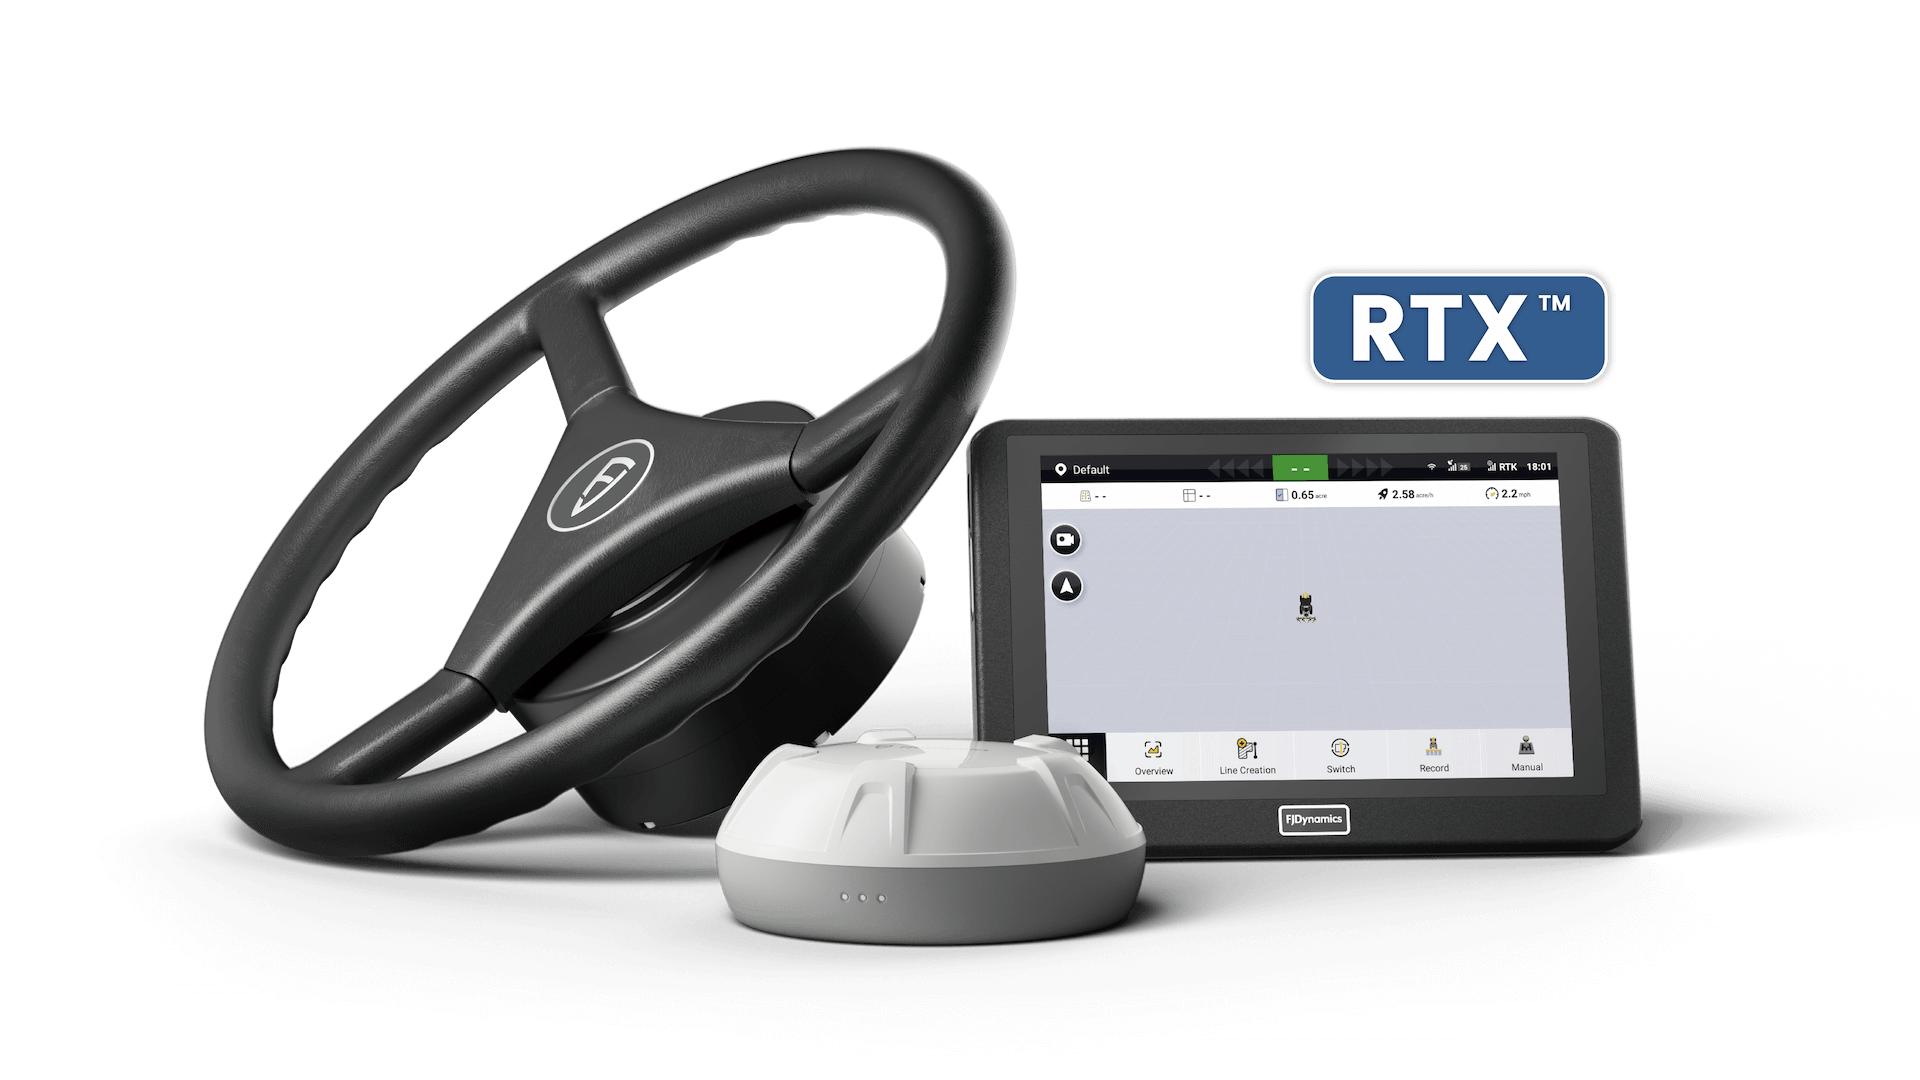 A FJD AT2 PRO beépített RTX korrekciós eszközökkel rendelkezik, amelyek centiméteres pontosságot biztosítanak egy előfizetési szolgáltatáson keresztül.A világ minden táján elérhető, bázisállomás vagy internetkapcsolat szükségessége nélkül, amely korlátozza a működési területet.